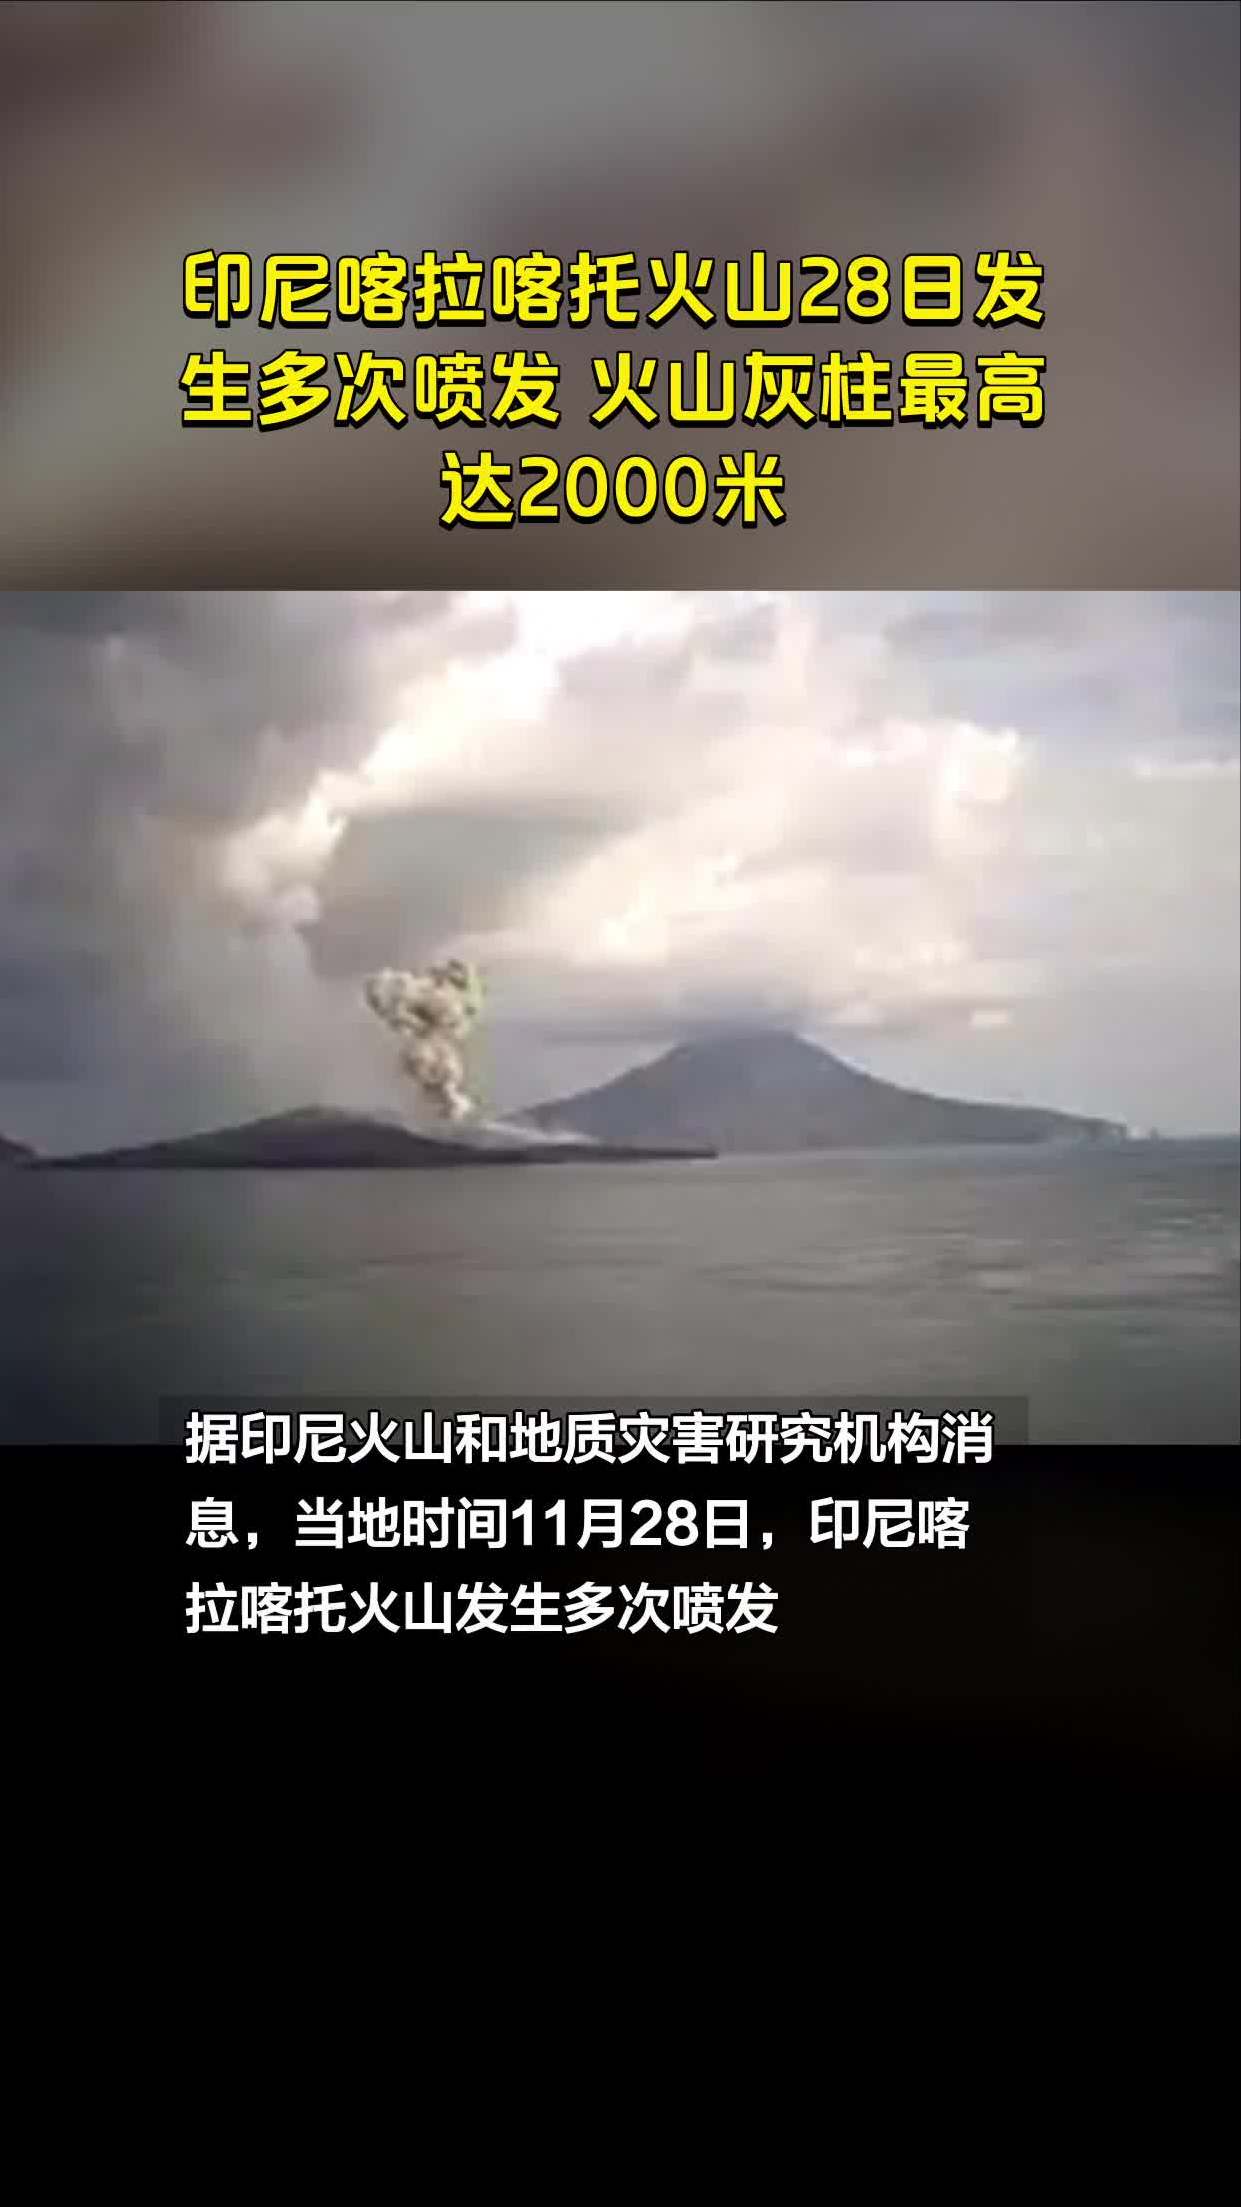 印尼喀拉喀托火山28日发生多次喷发火山灰柱最高达2000米